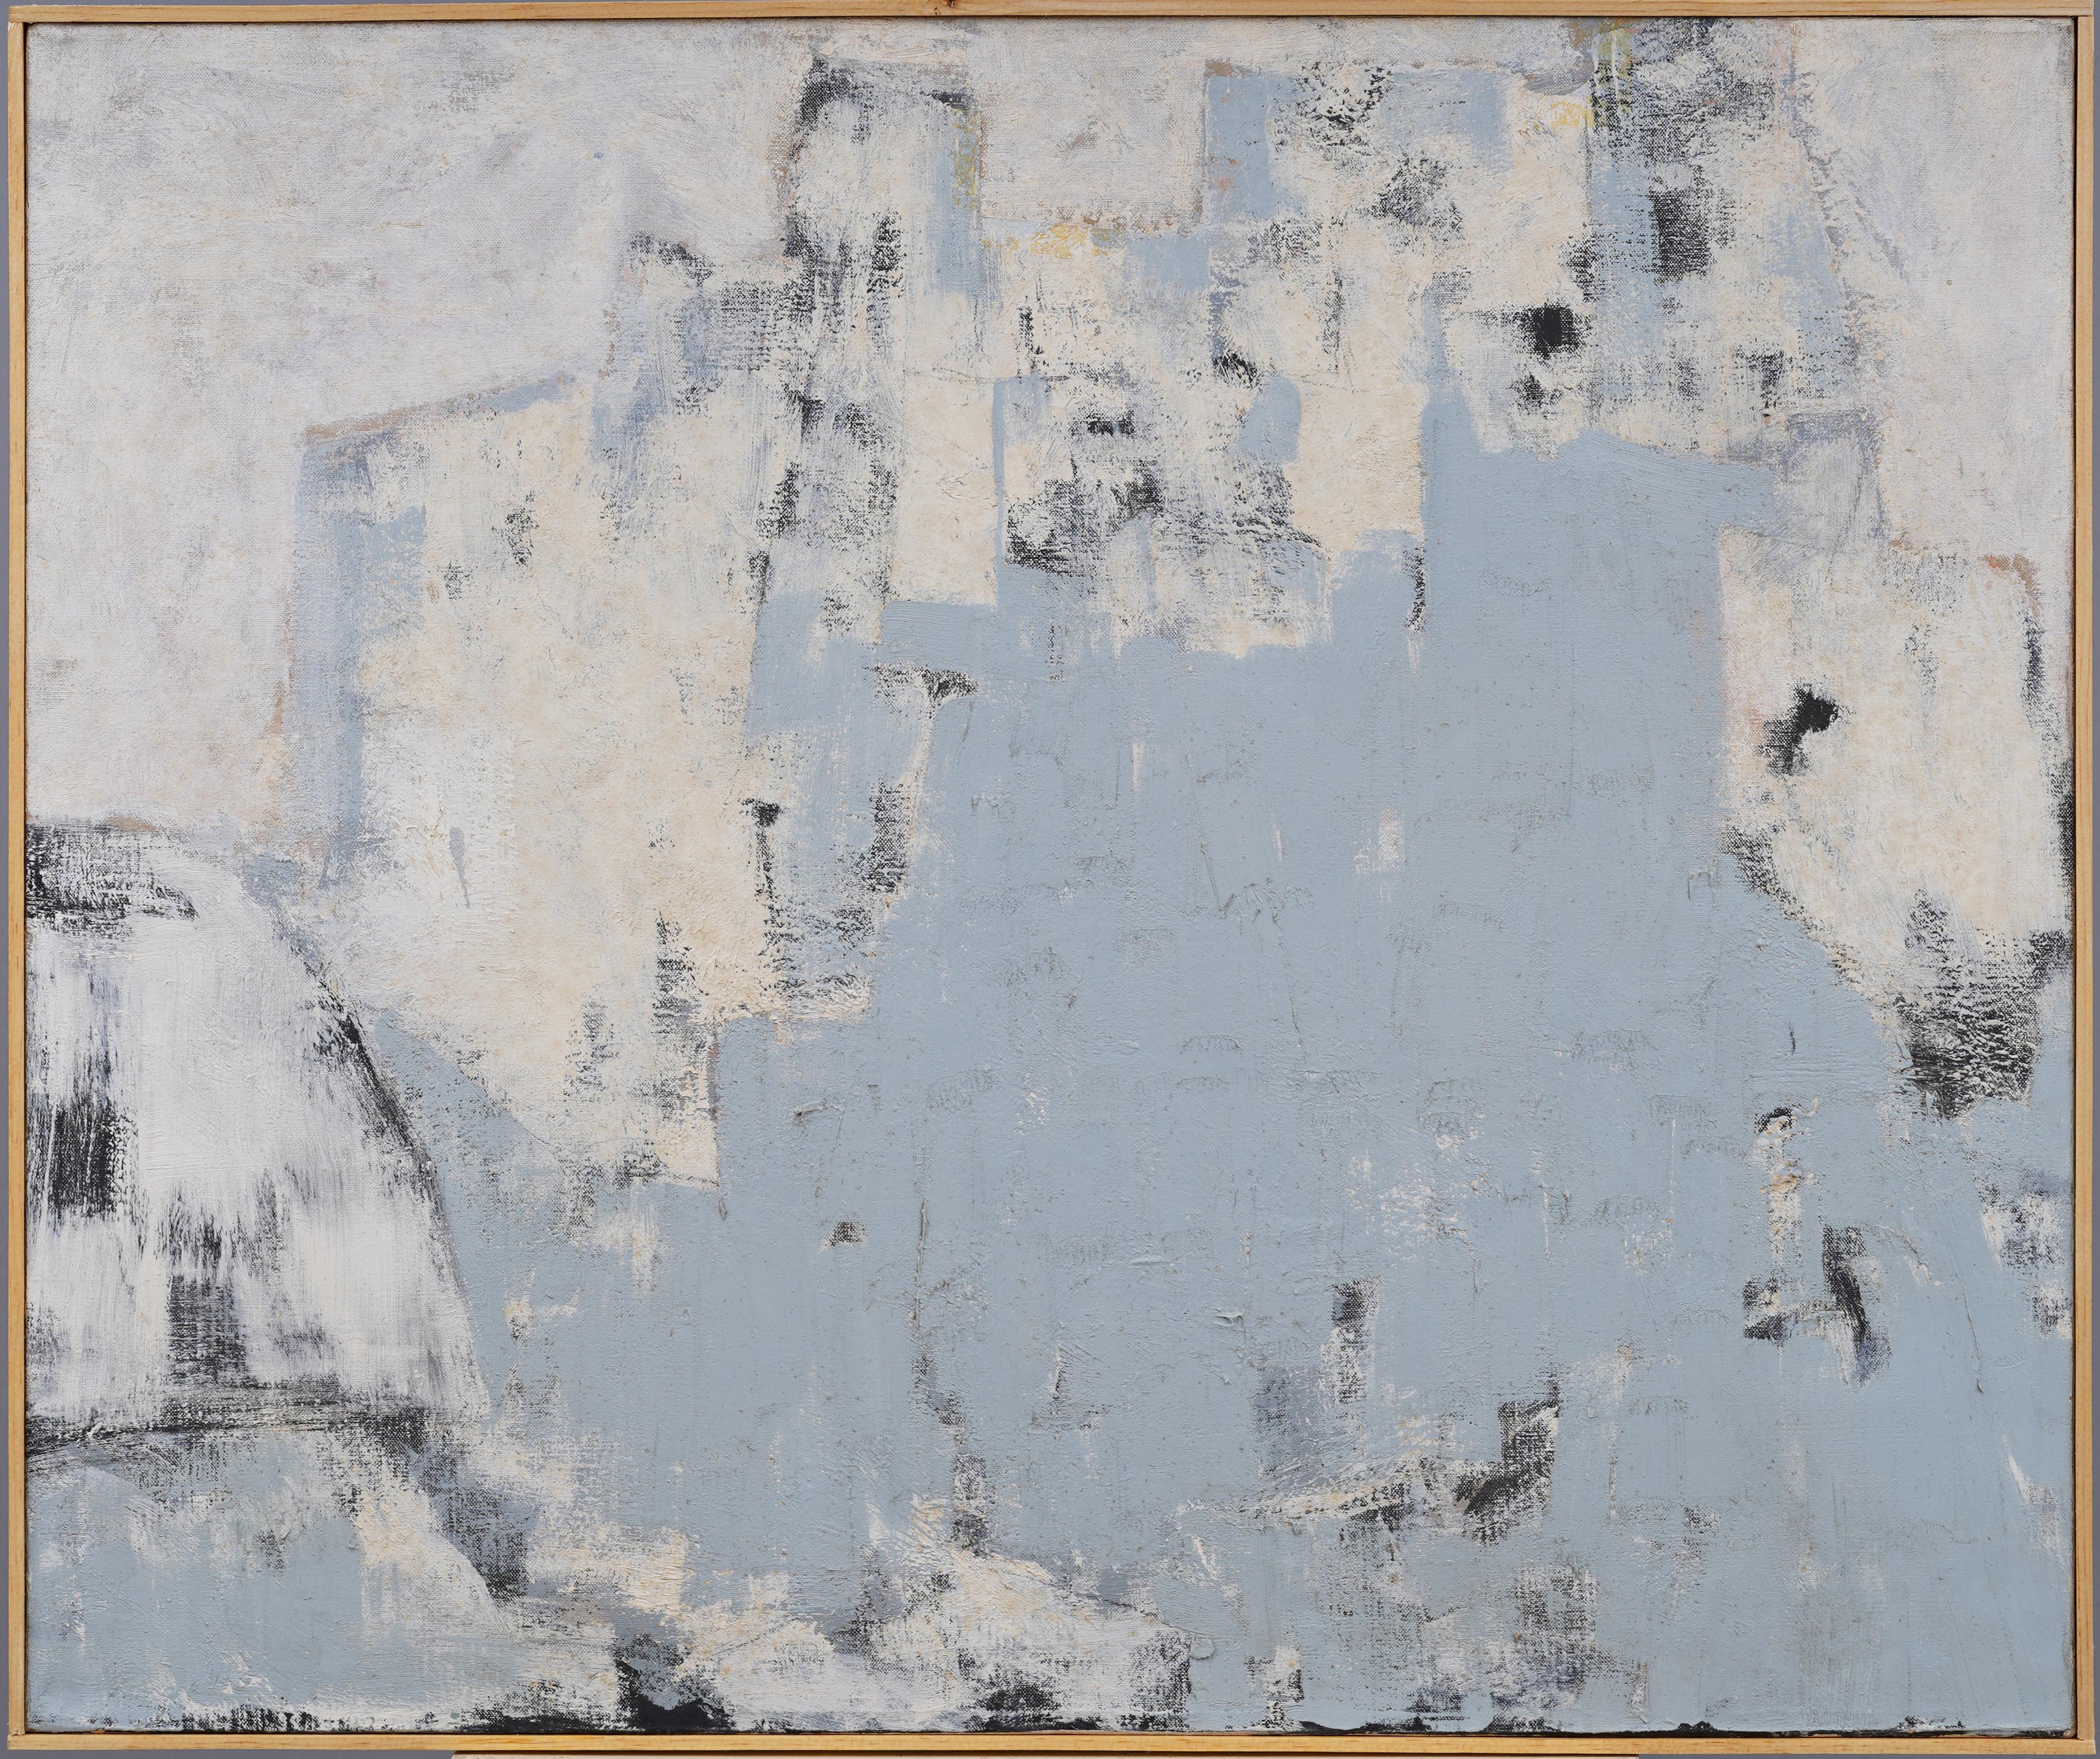 Landscape Painting Unknown - Ancienne école américaine moderniste, expressionniste abstraite, grande peinture encadrée